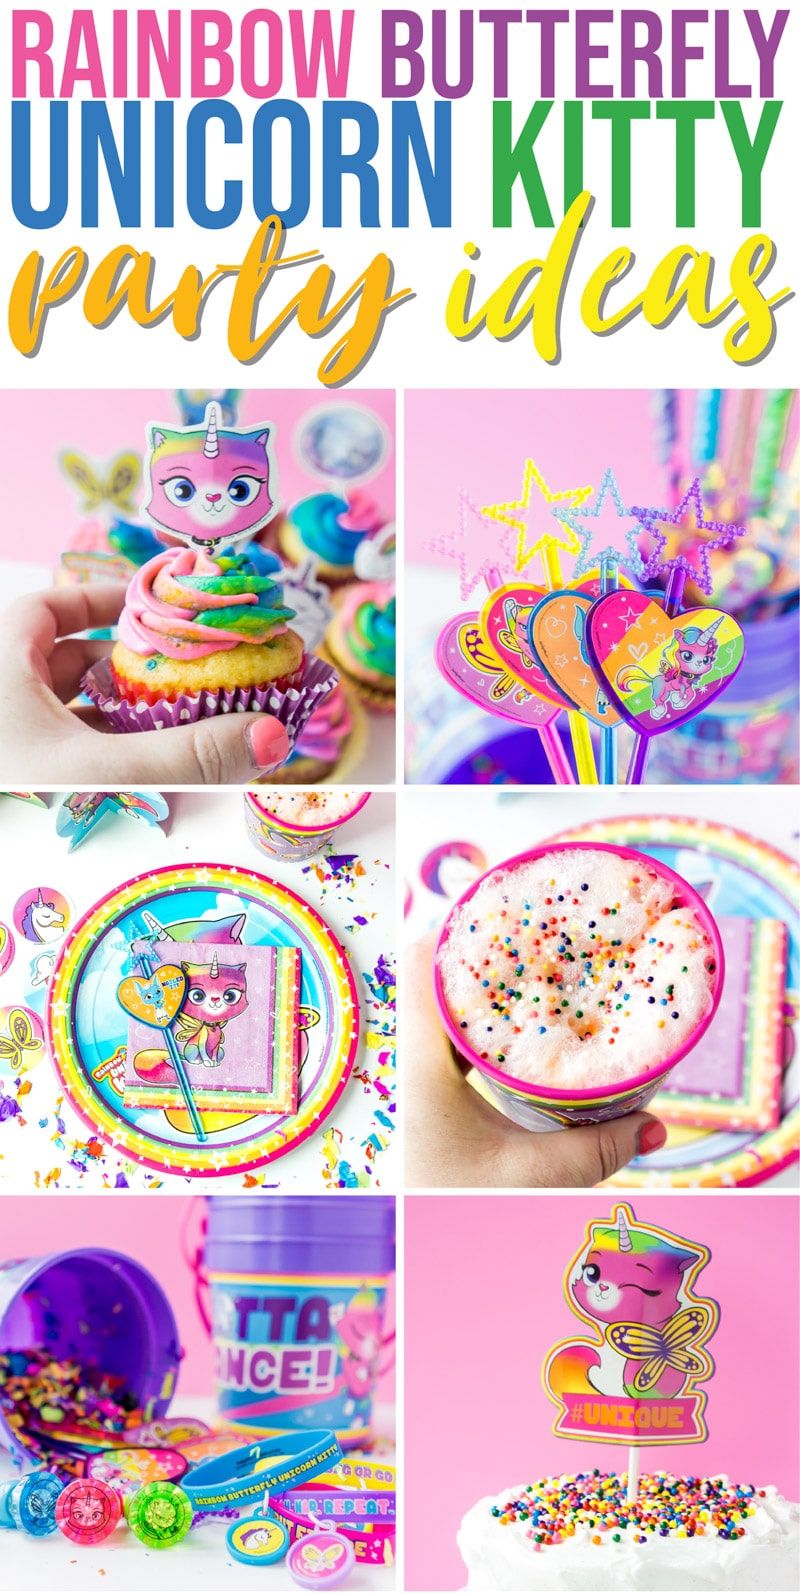 ¡Las mejores ideas para fiestas de gatitos, unicornios y mariposas arcoíris! Todo lo que necesita: comida, decoraciones, obsequios y más para una celebración colorida.